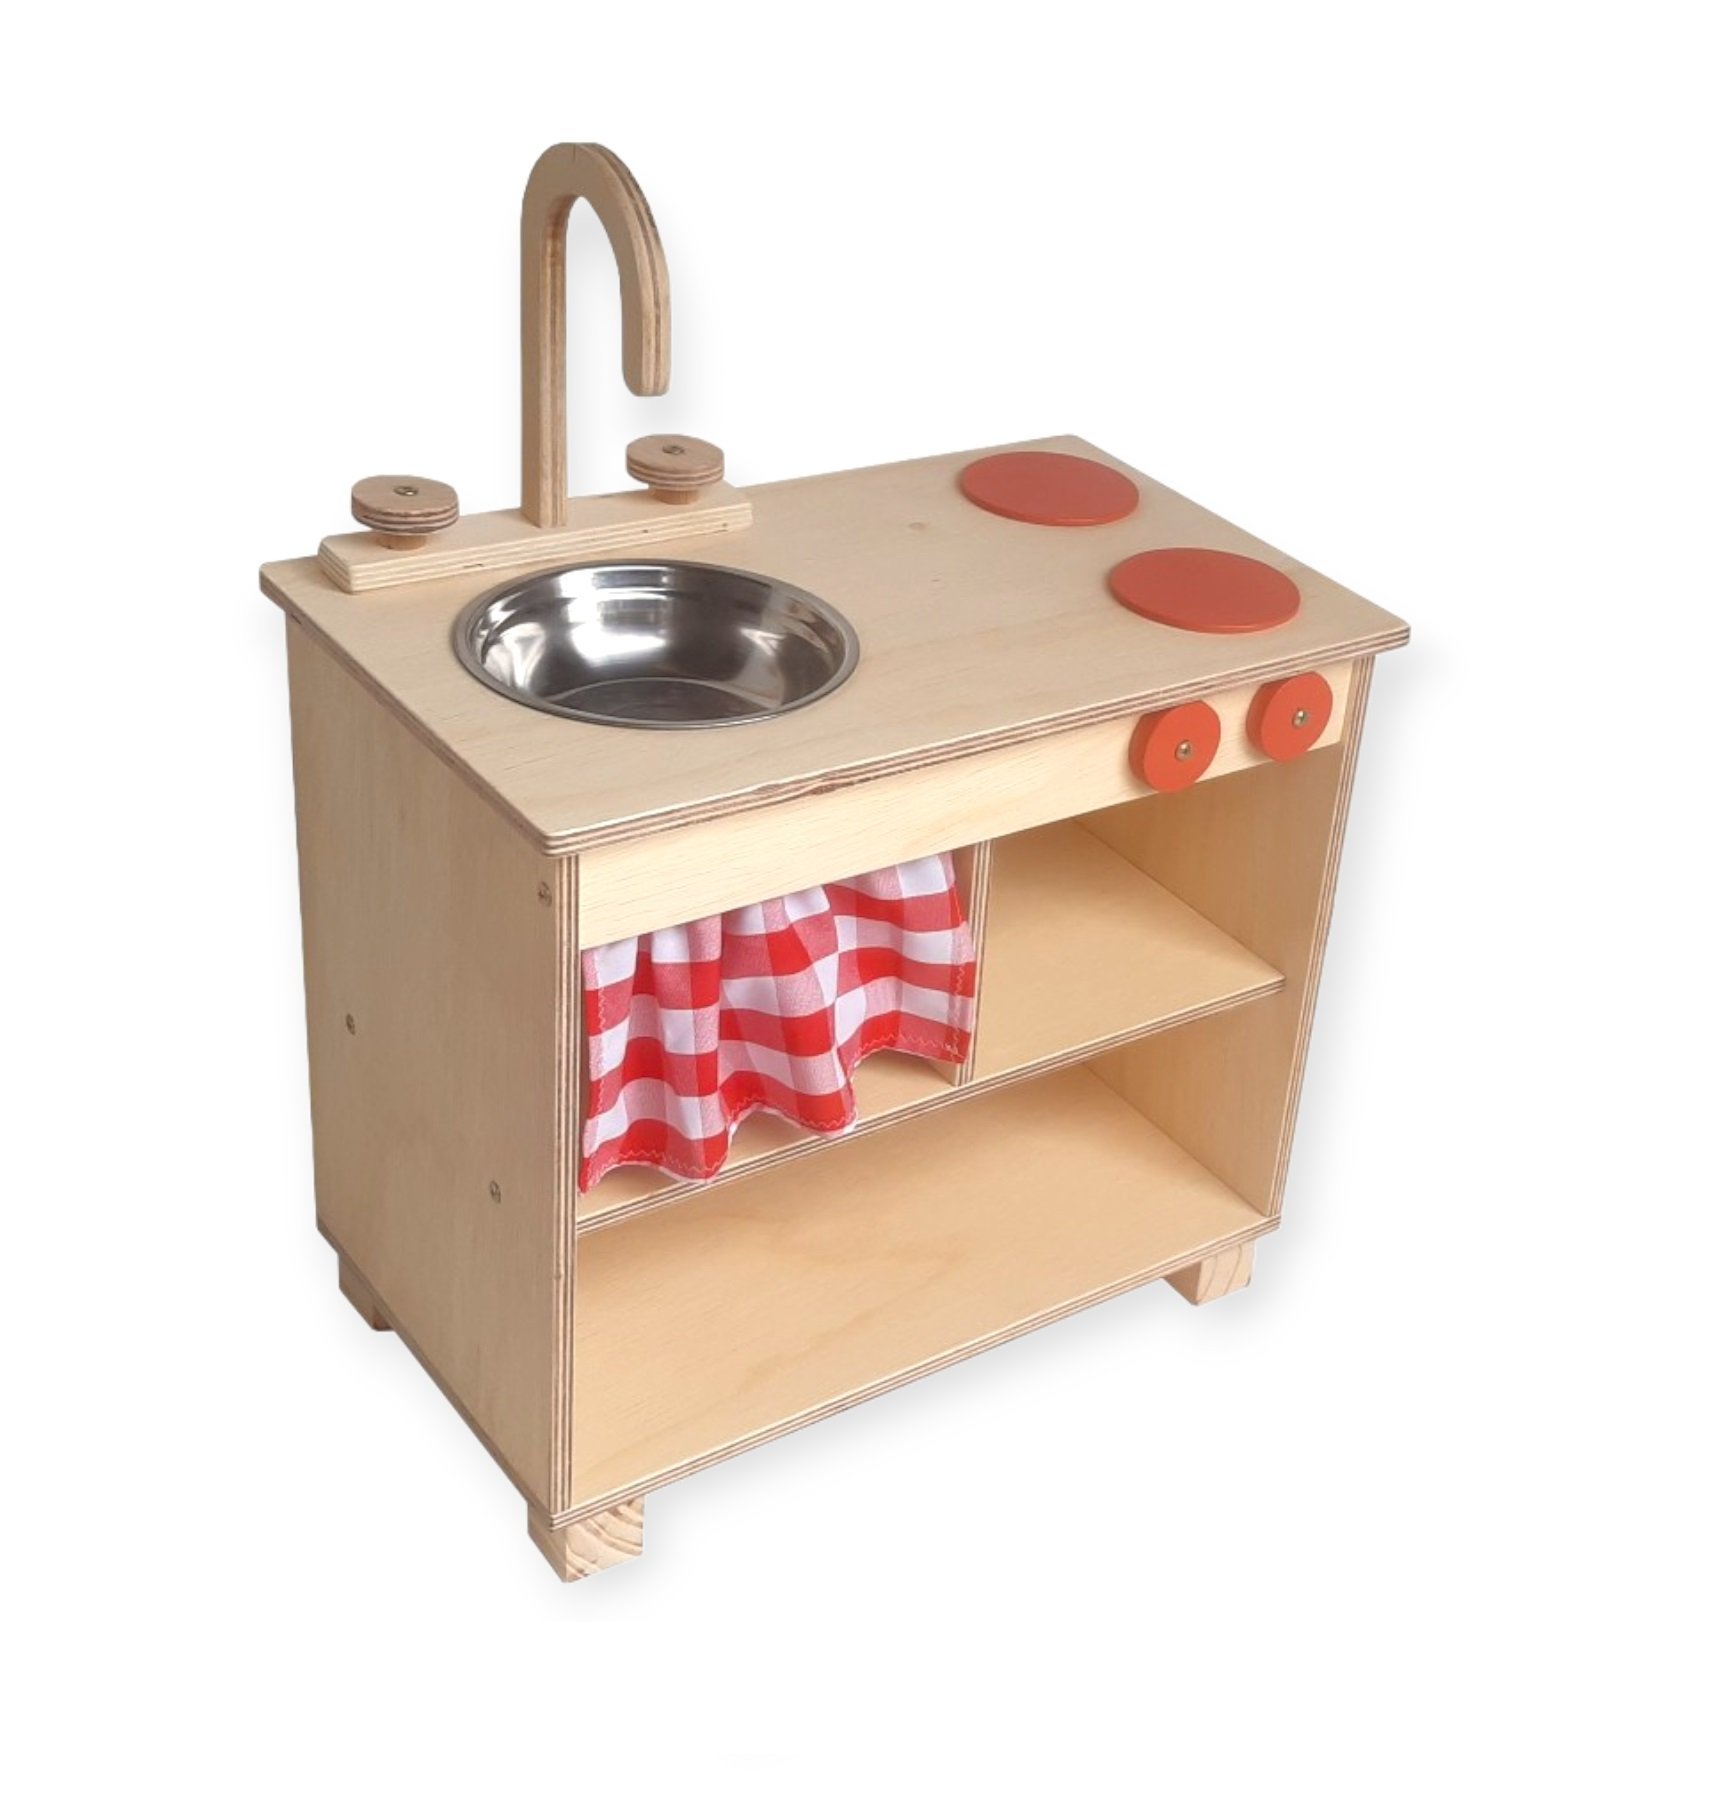 Cozinha infantil de madeira vermelha com botijão – Ateliê de madeira - 3